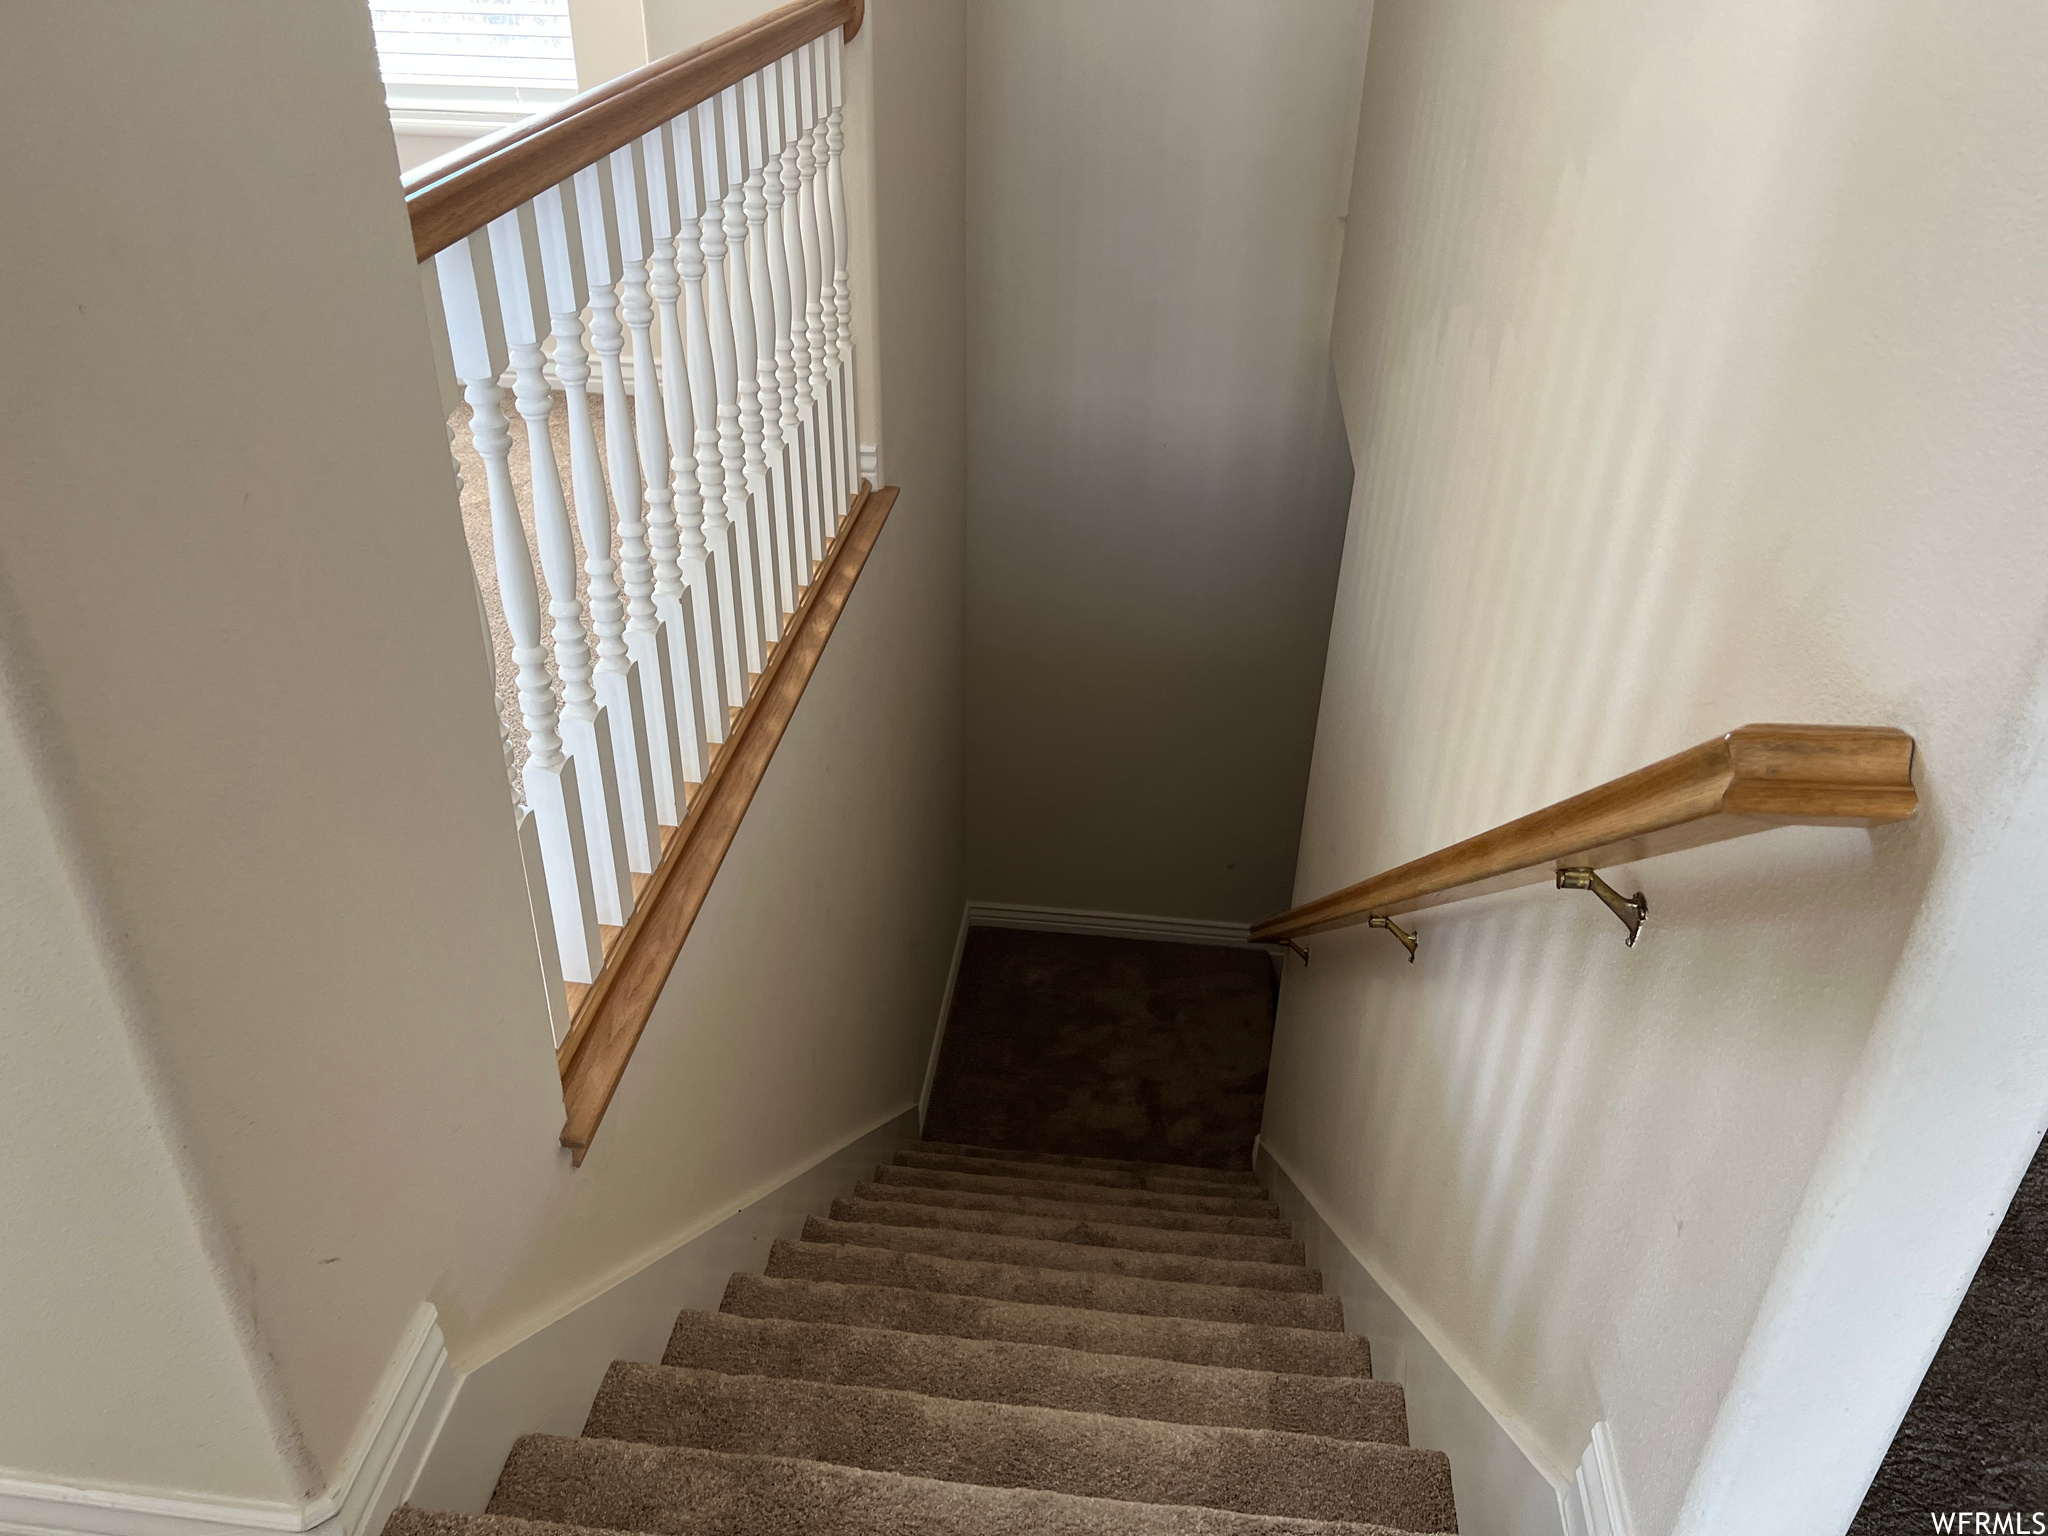 Stairway featuring dark carpet